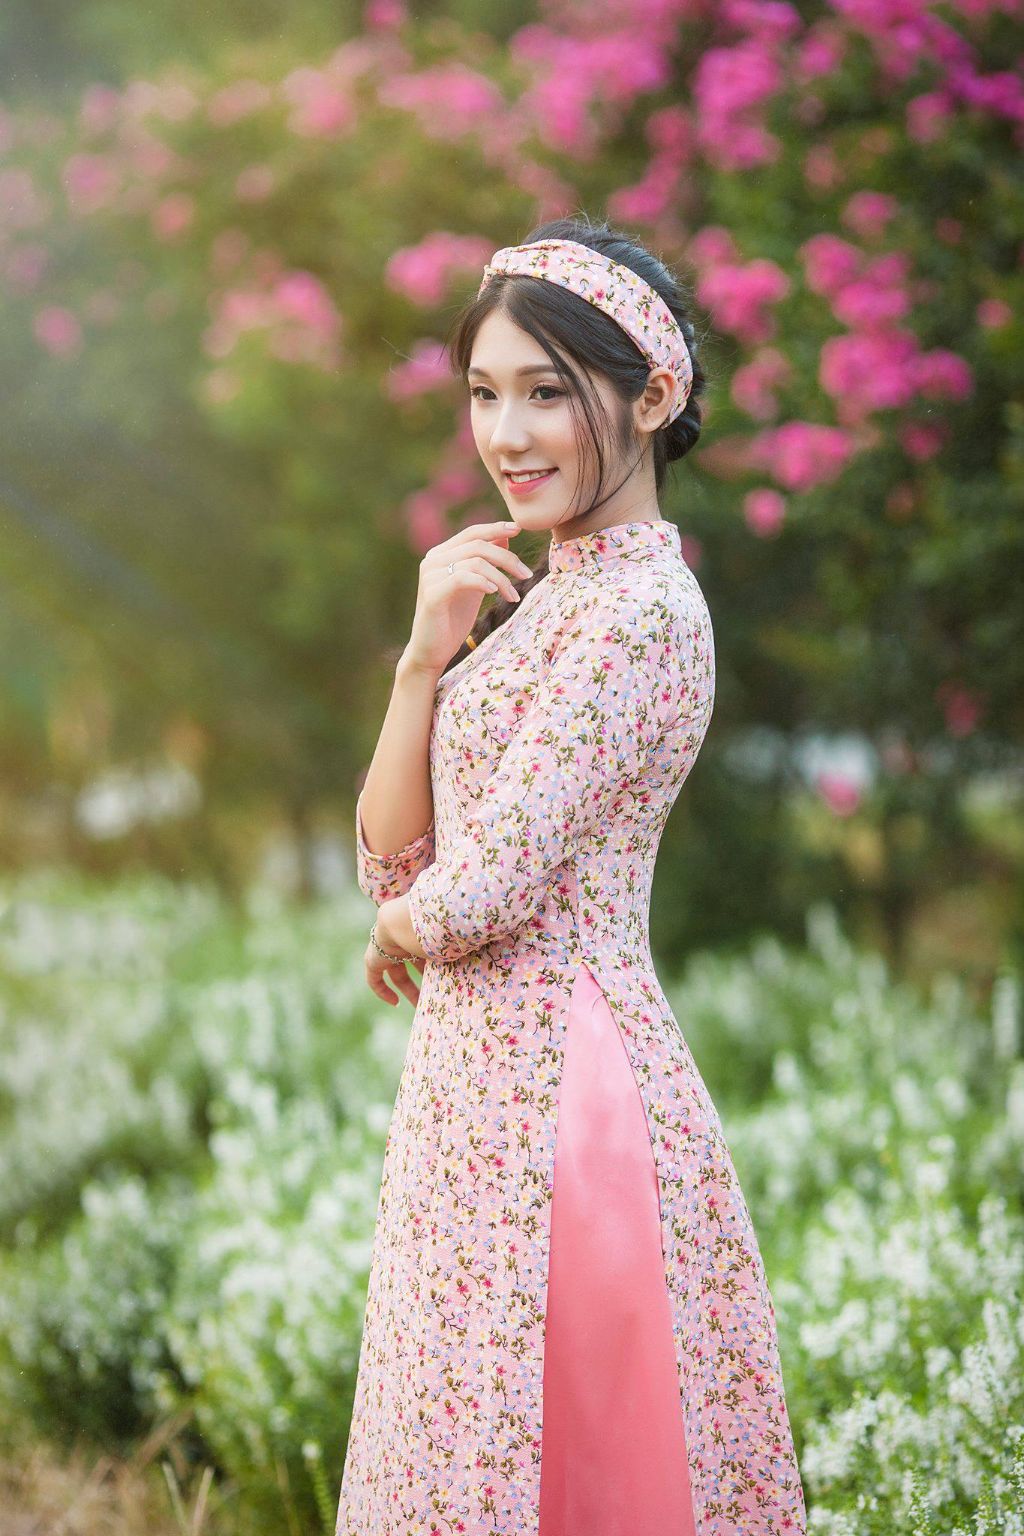 Sử dụng dịch vụ cho thuê áo dài Tết ở Hà Nội - Sự lựa chọn tuyệt vời để thu hút may mắn trong năm mới